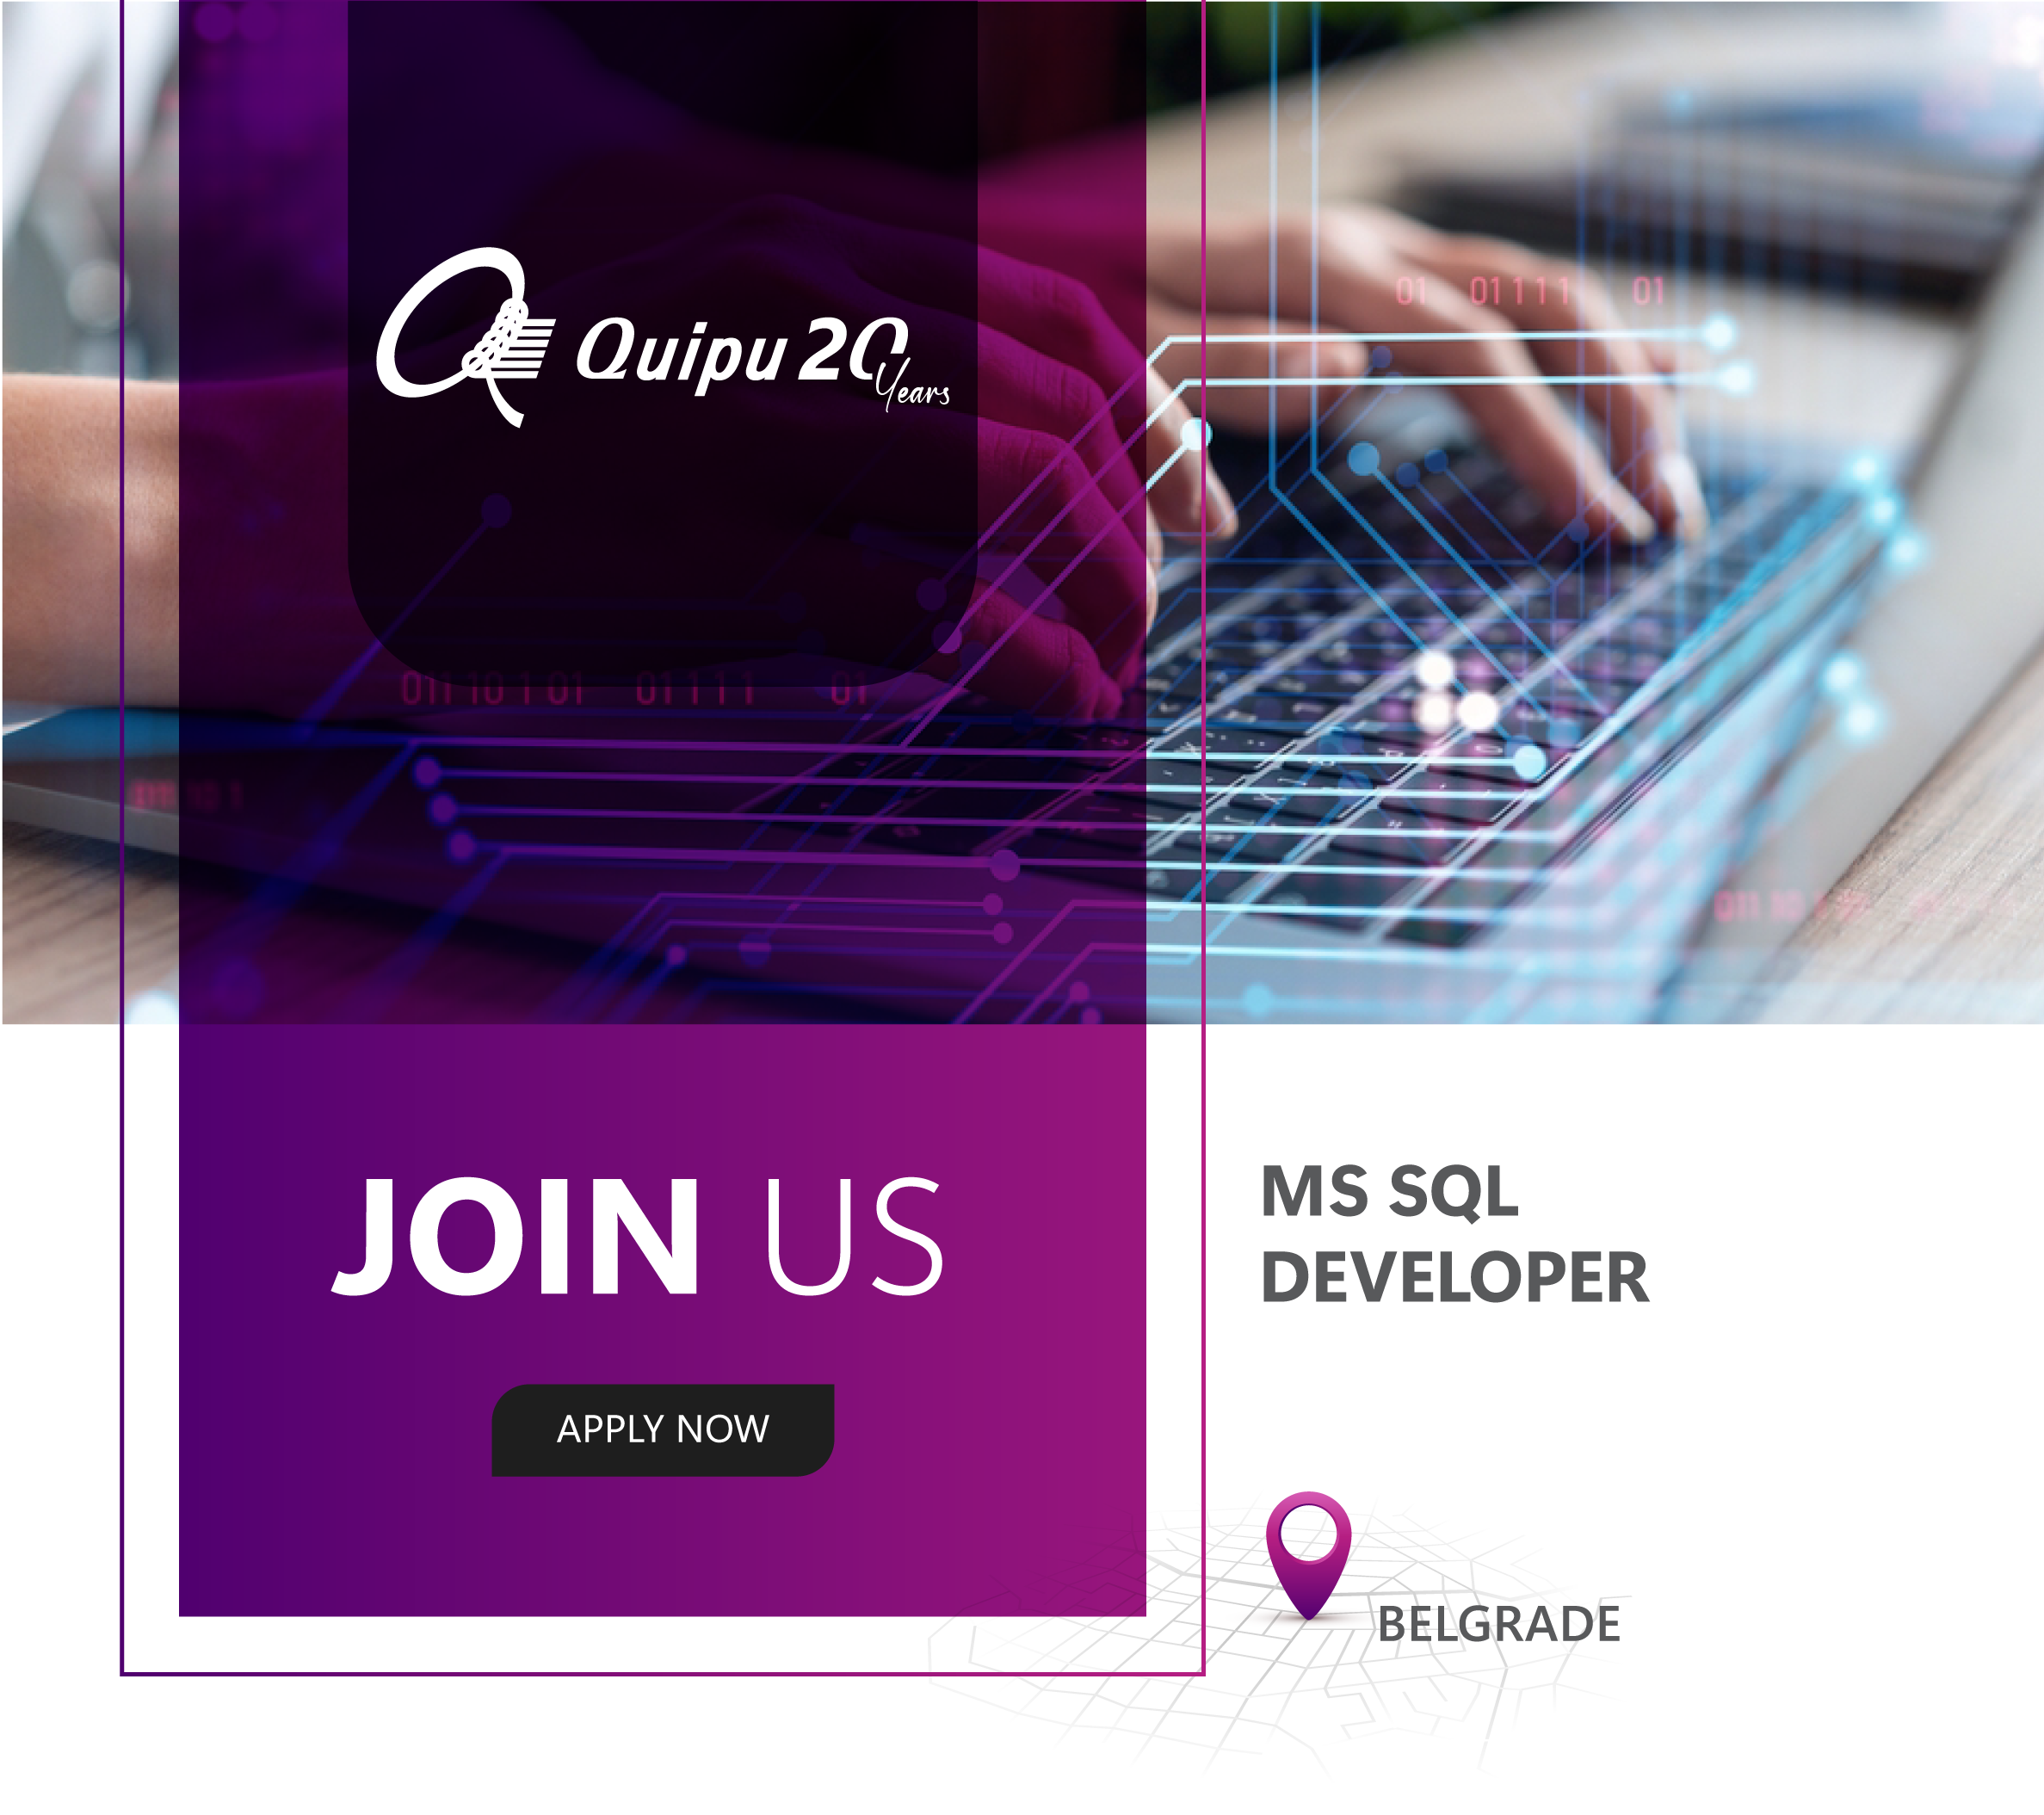 MS SQL Developer – Belgrade